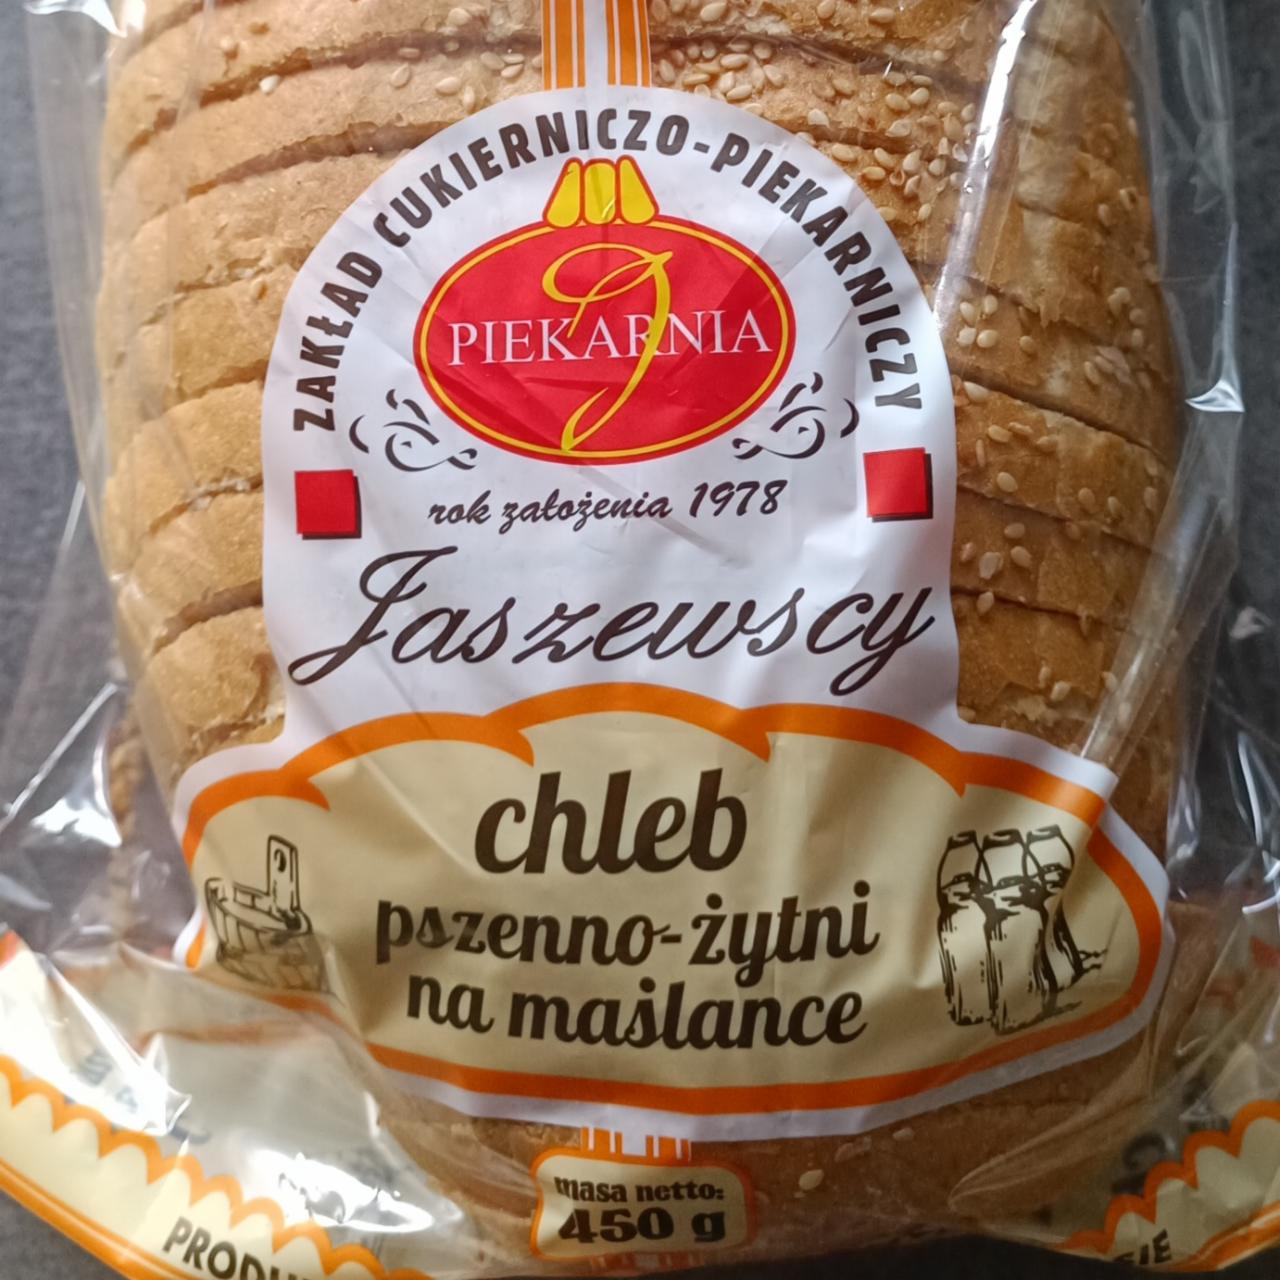 Zdjęcia - chleb pszenno zytni na maślance Jaszczewscy